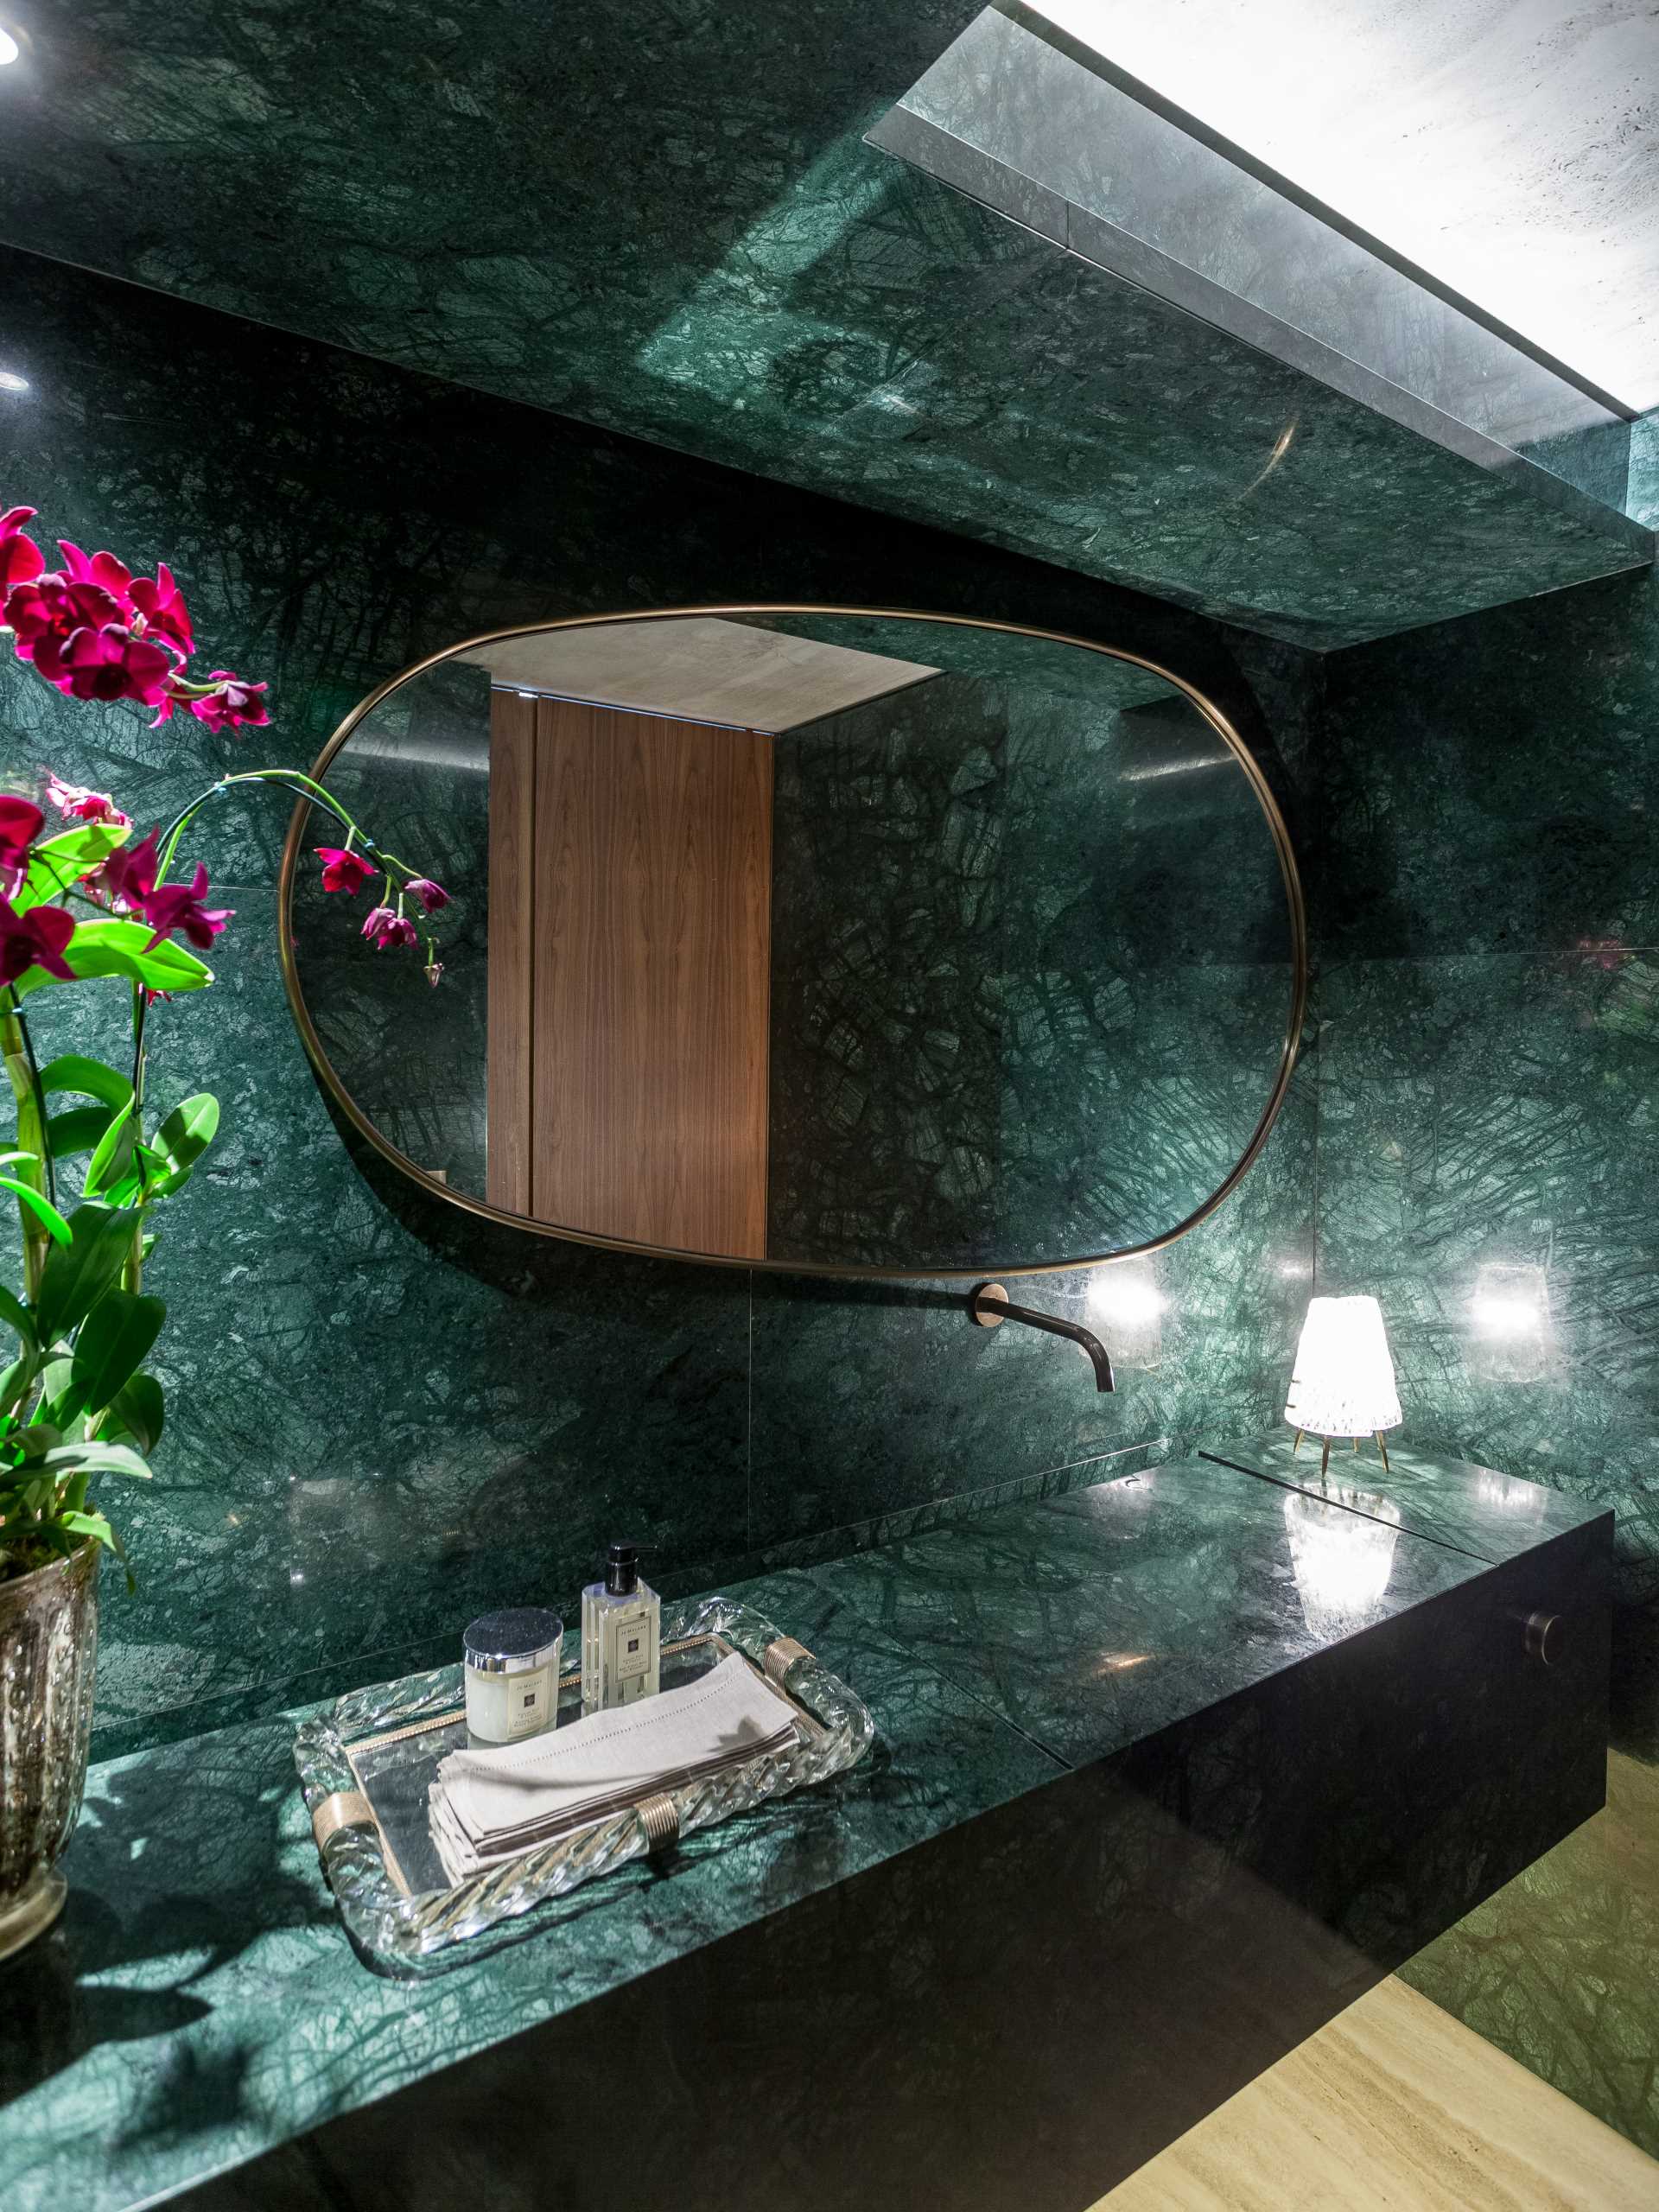 در این حمام از سنگ مرمر سبز گواتمالایی برای خط کشی دیوارها و روشویی استفاده شده است.